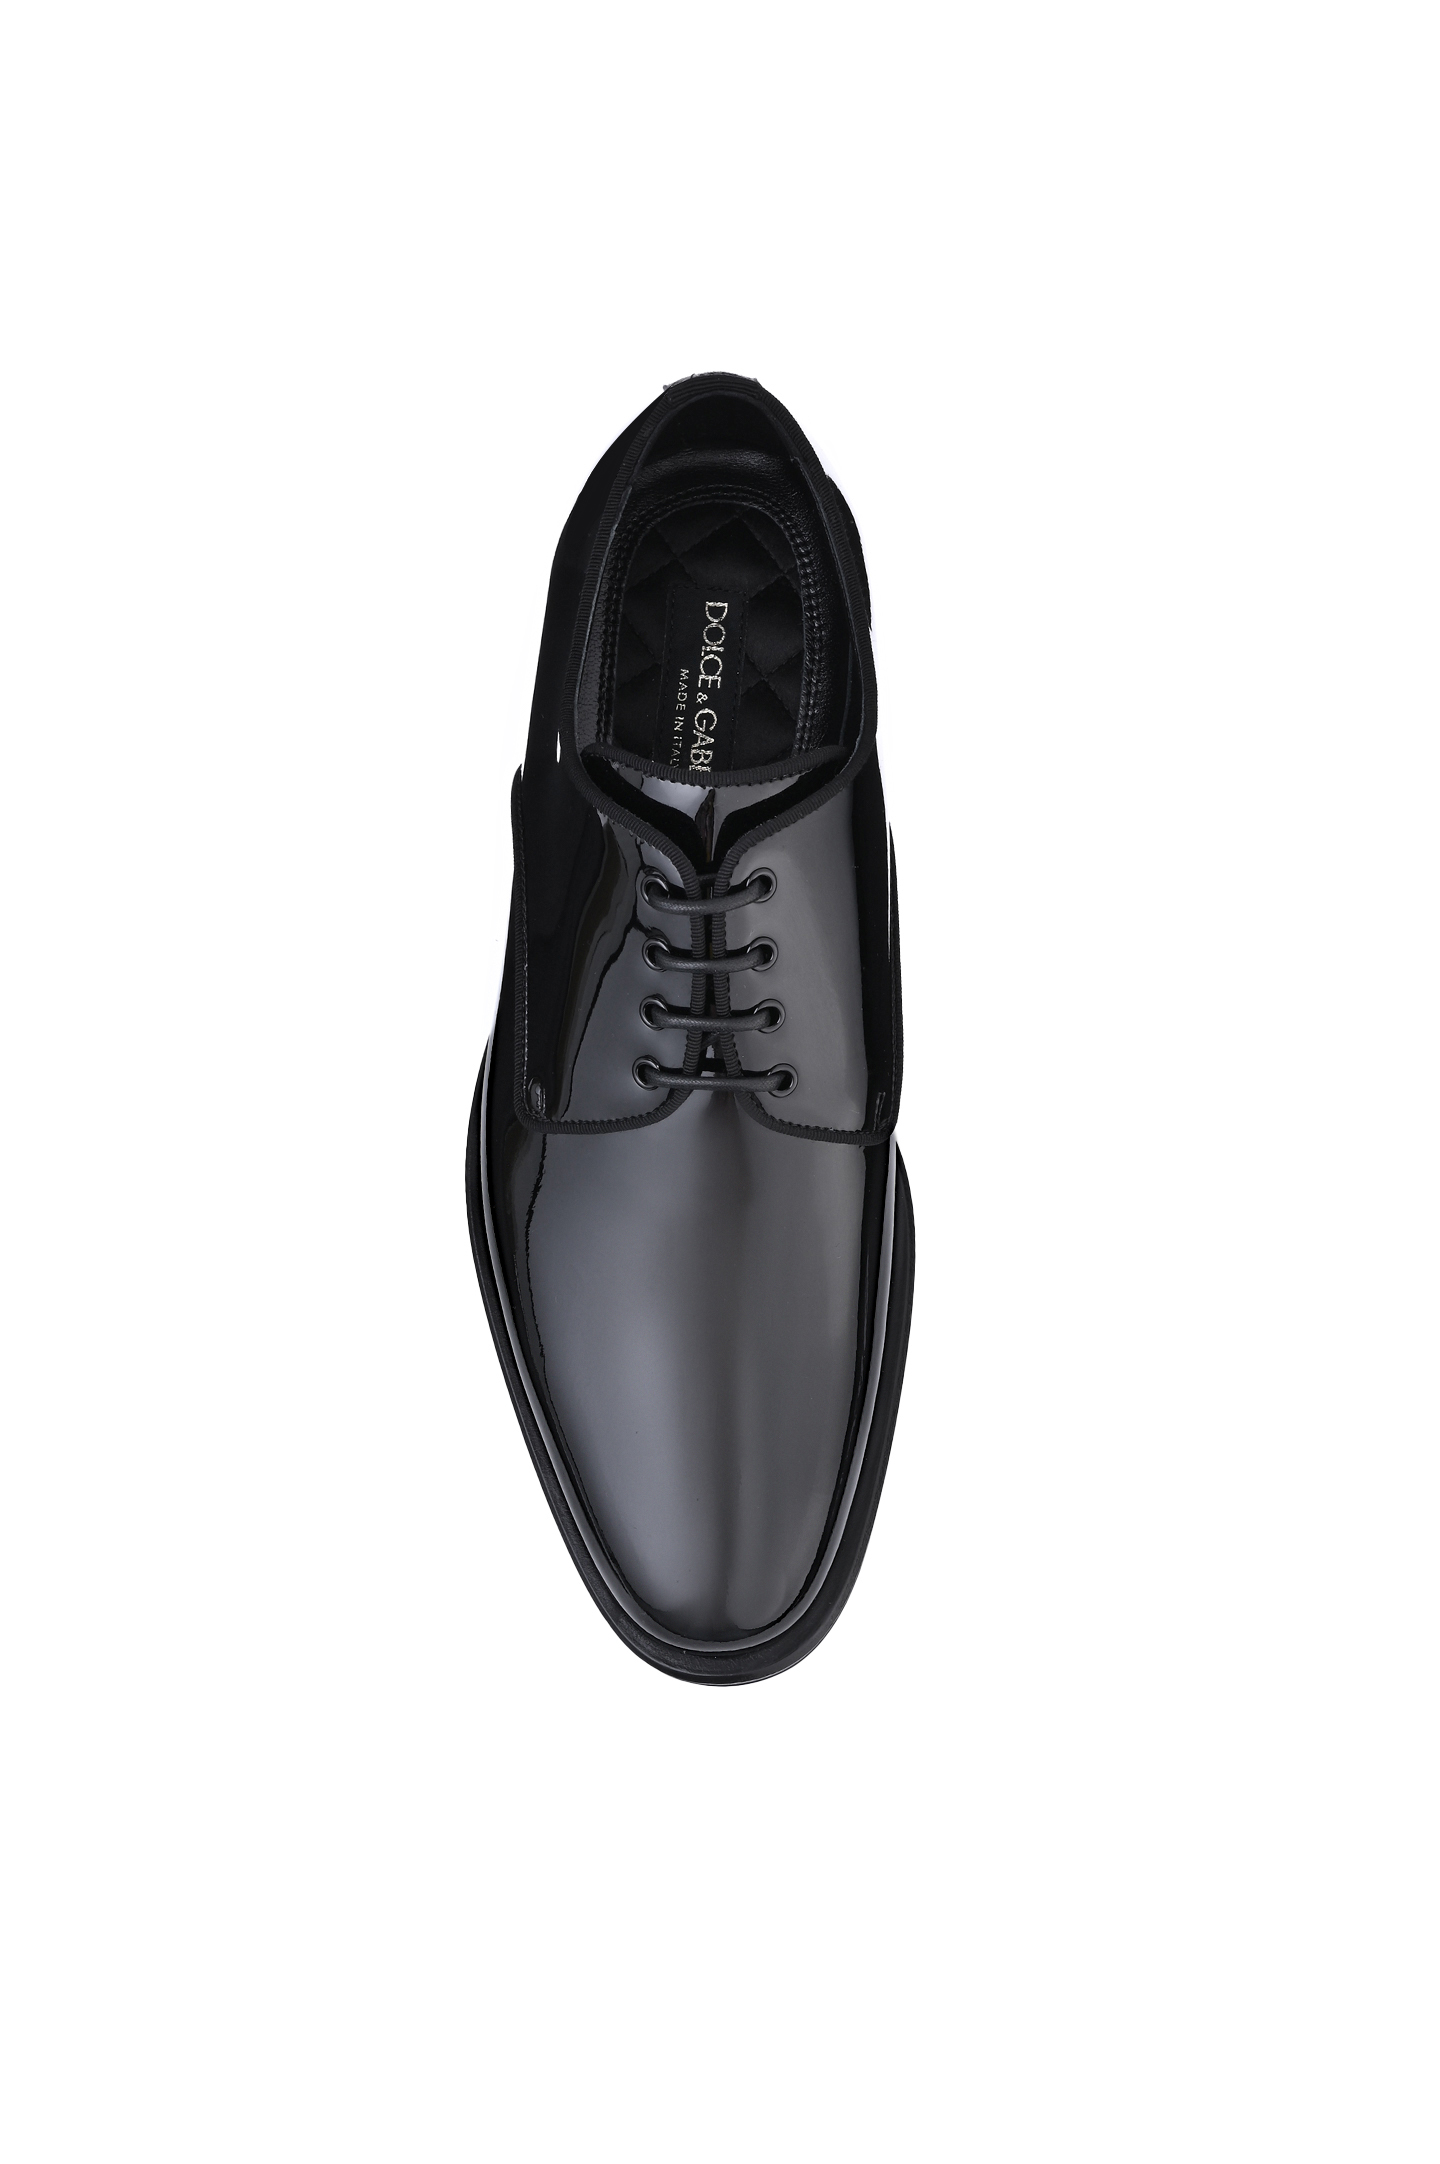 Туфли DOLCE & GABBANA A10597 AX651, цвет: Черный, Мужской